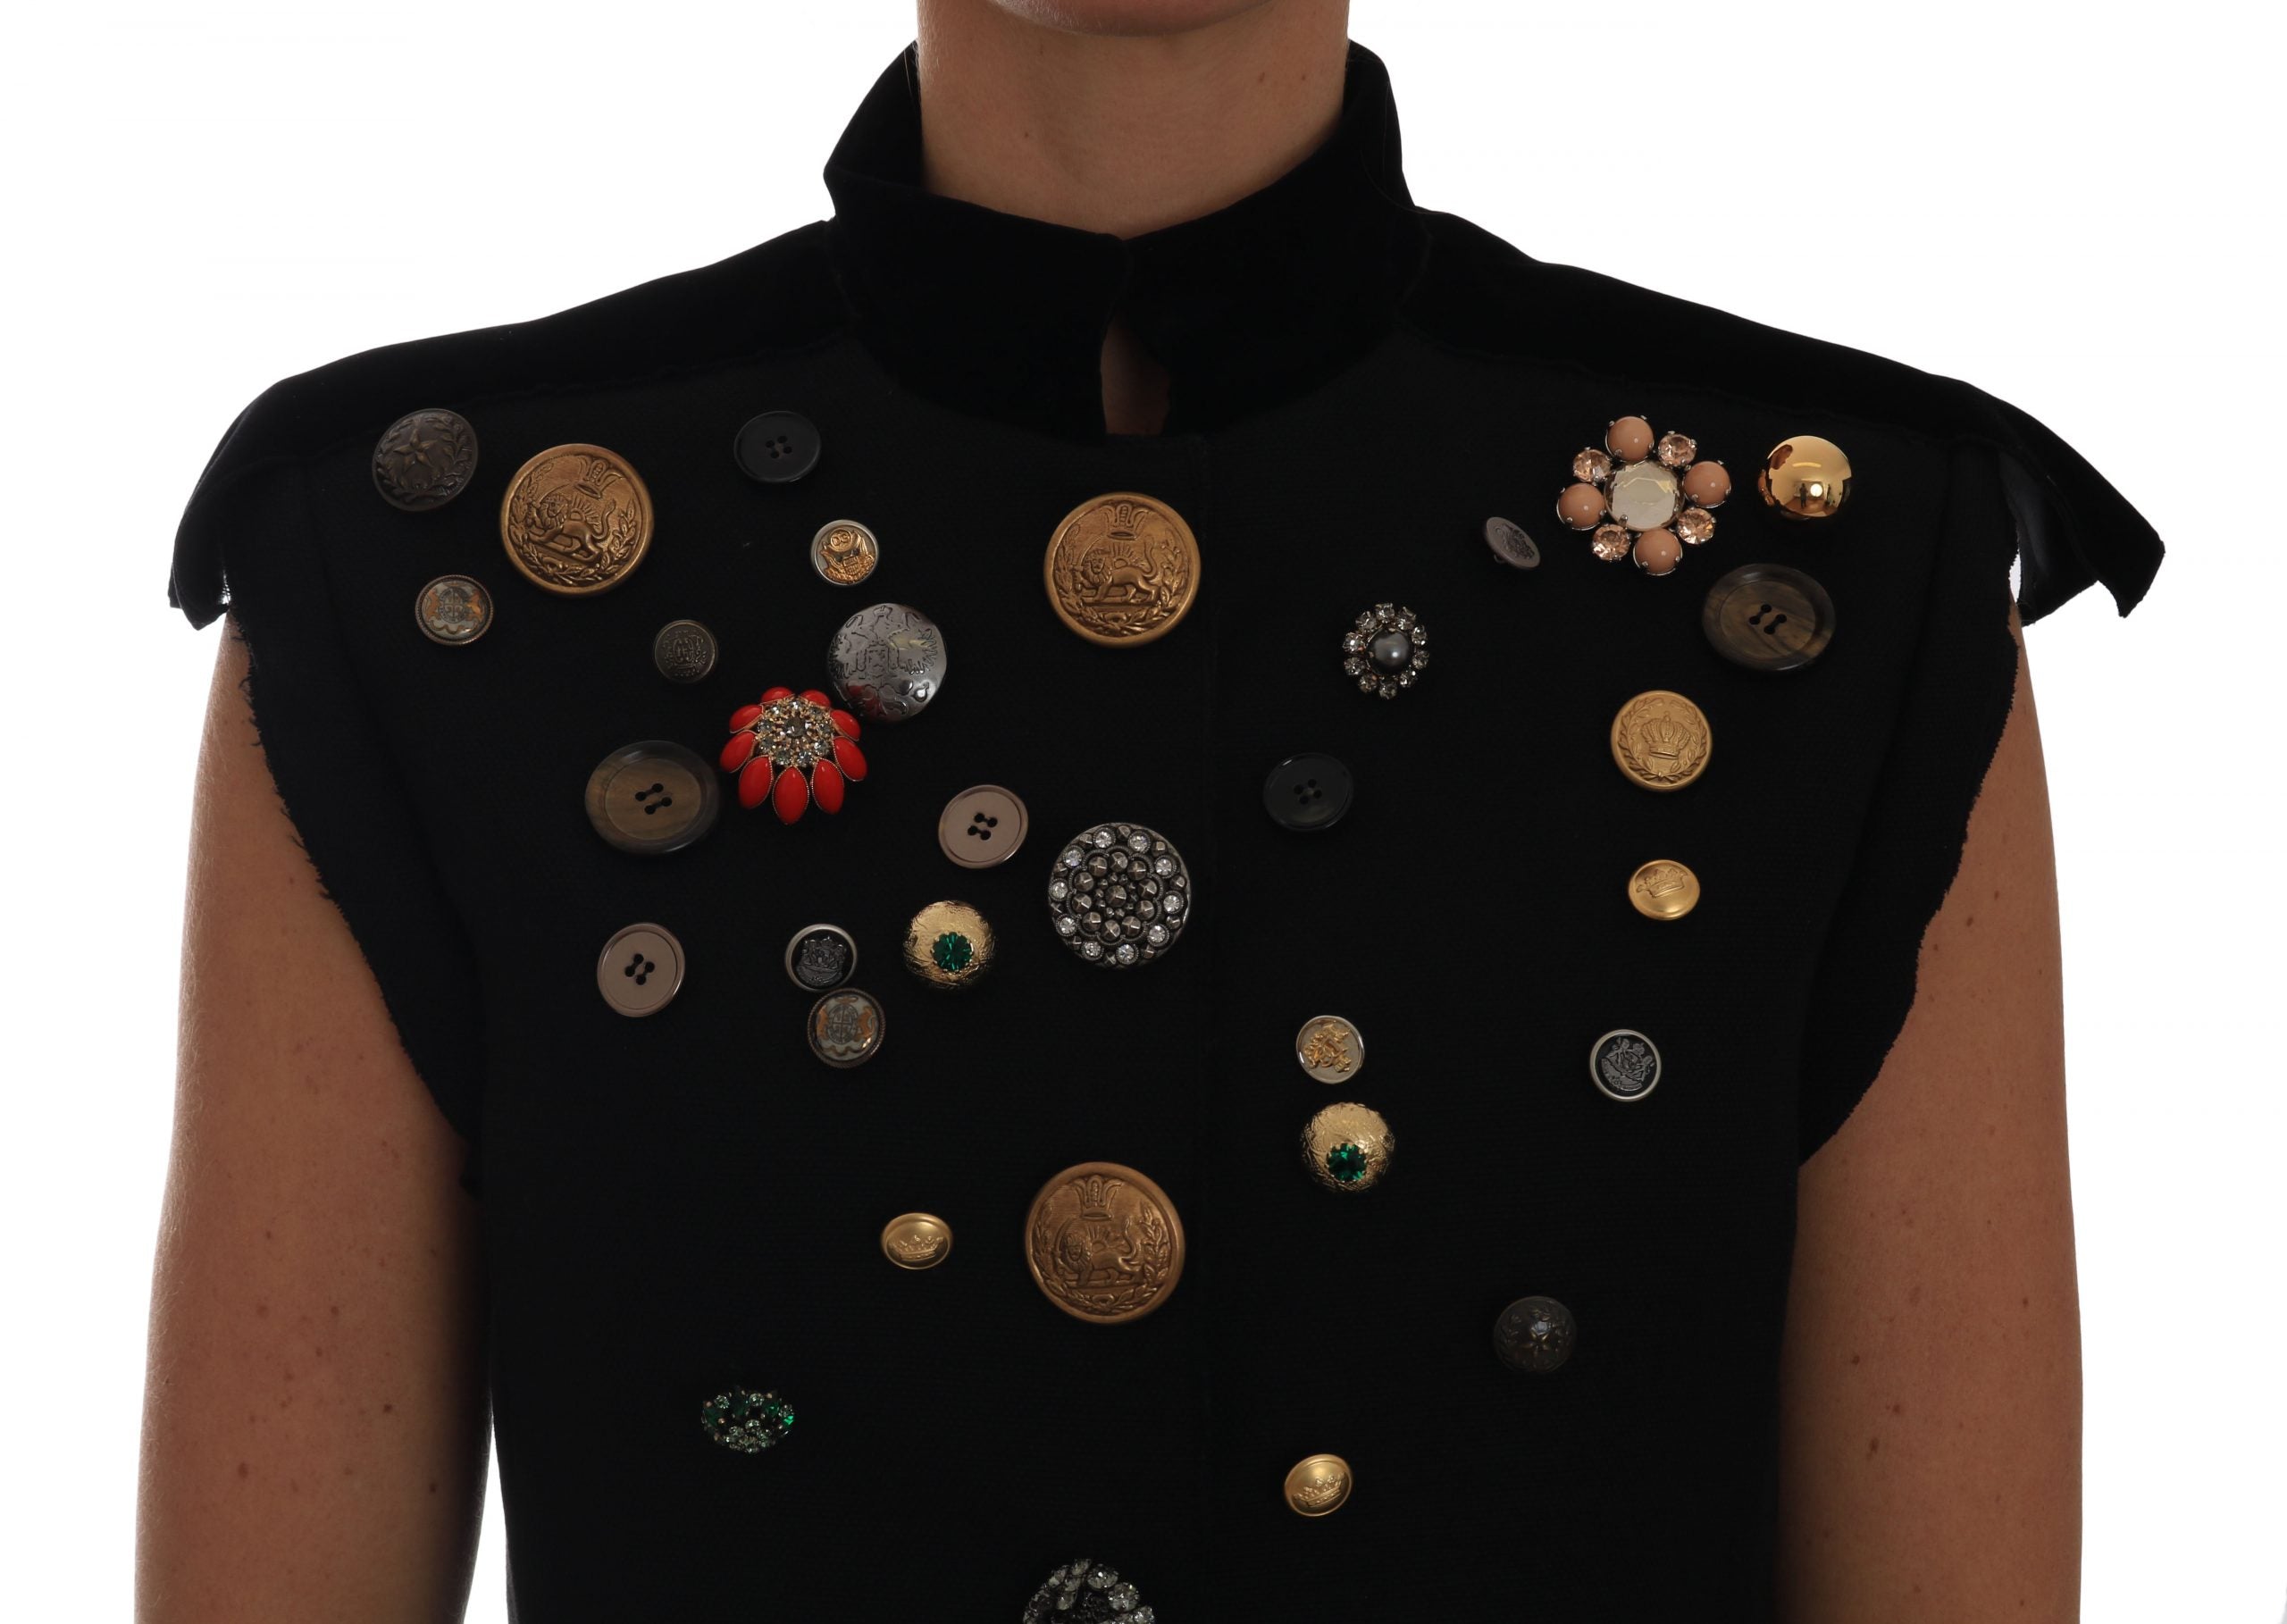 Dolce & Gabbana Black Embellished Floral Military Jacket Vest